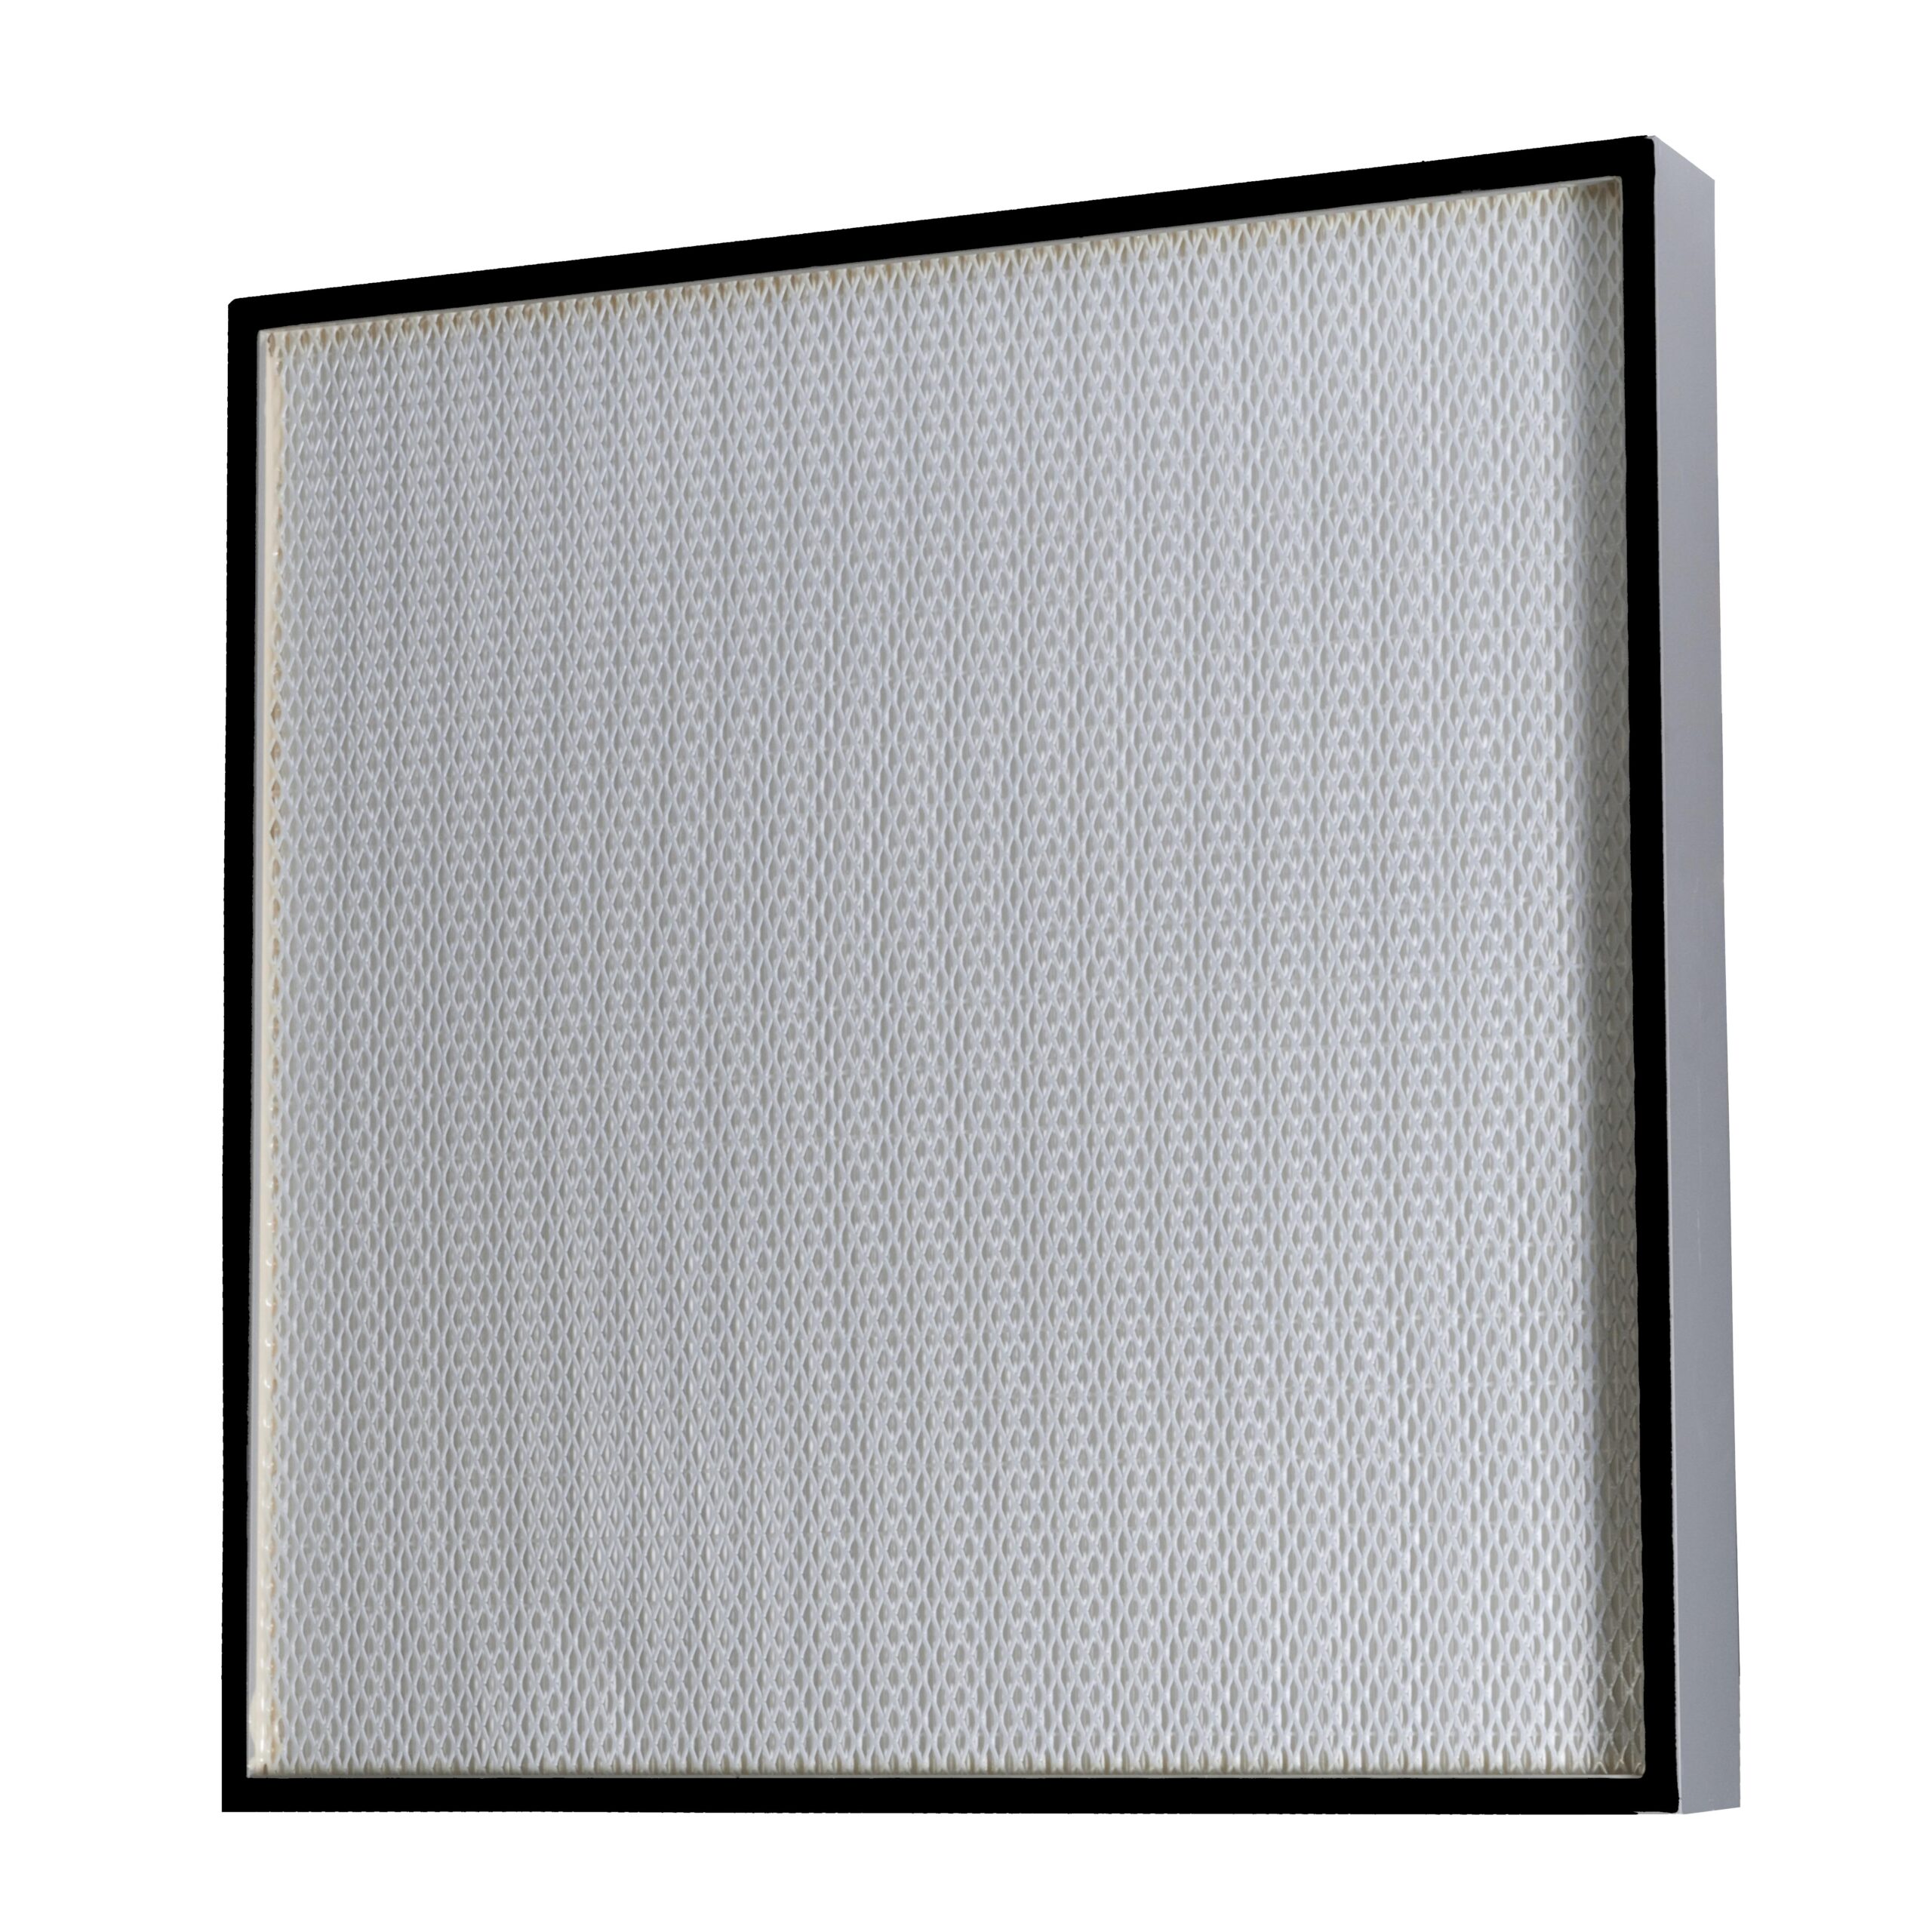 FILTRO HEPA ABSO - ANDEFIL filtros de aire y ventilación industrial